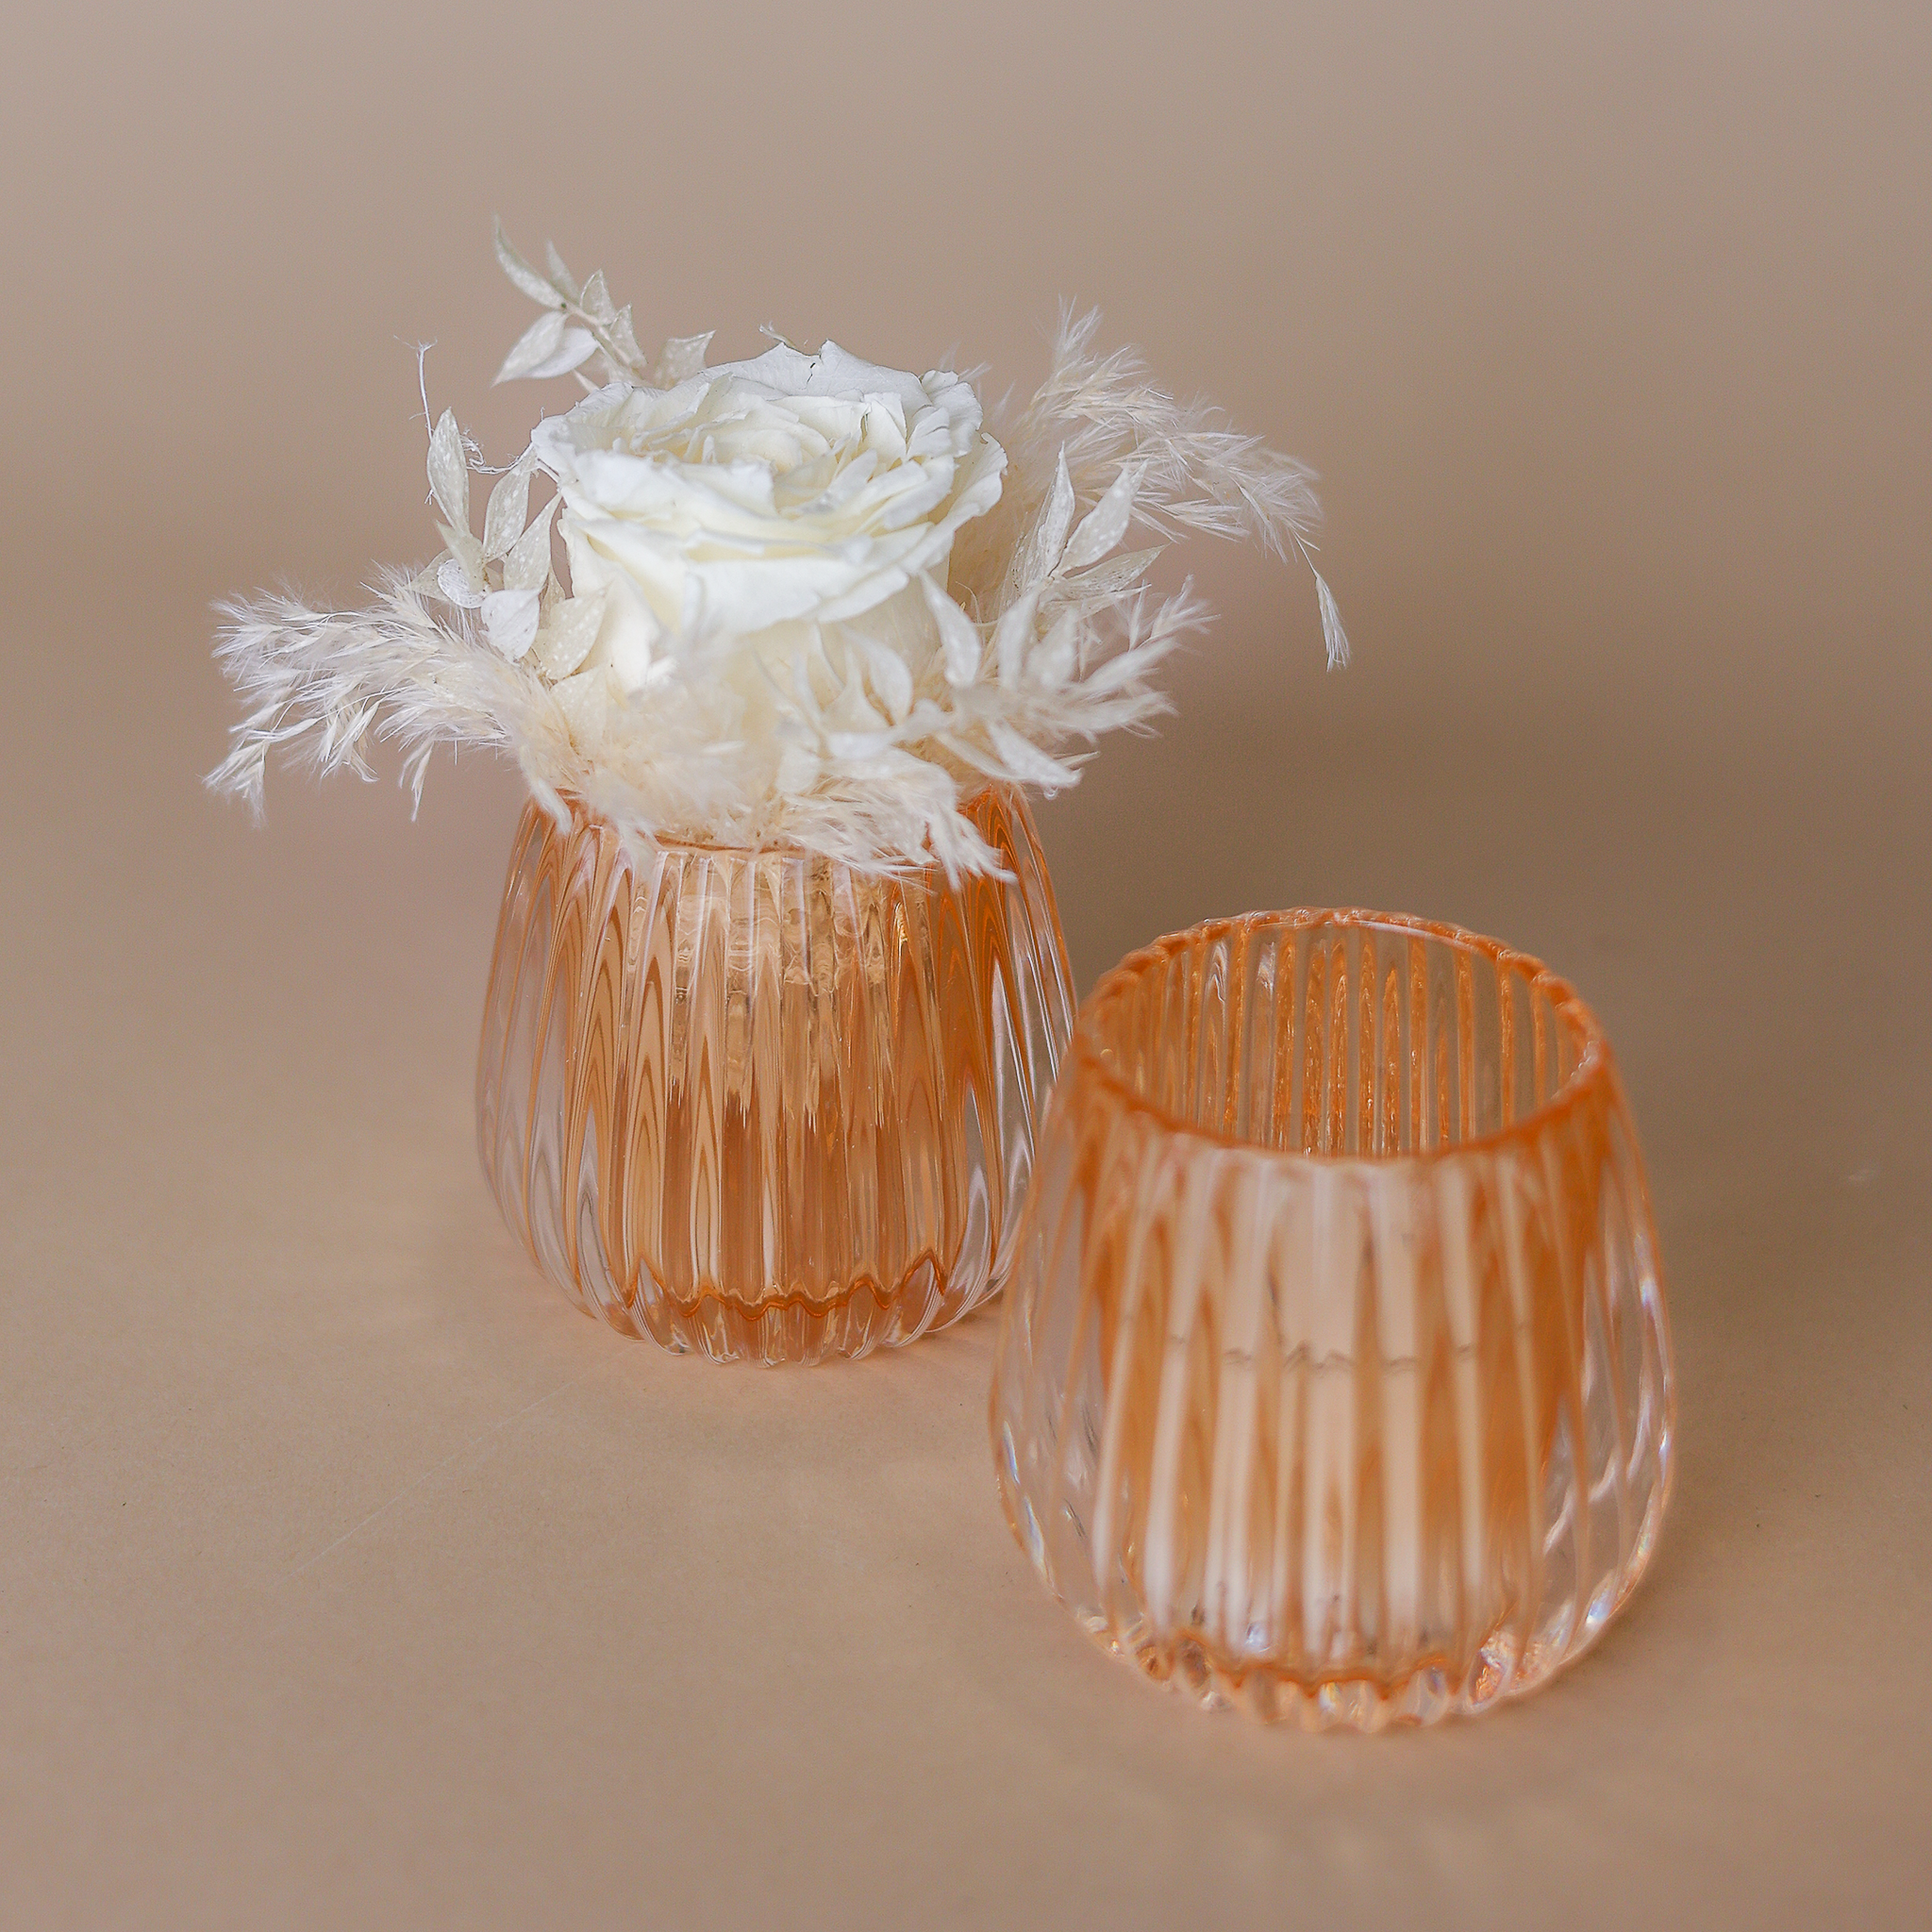 Honigfarbenes Windlicht mit einer natürlichen, stabilisierten Rose in weiß und passendem Beiwerk dekoriert.